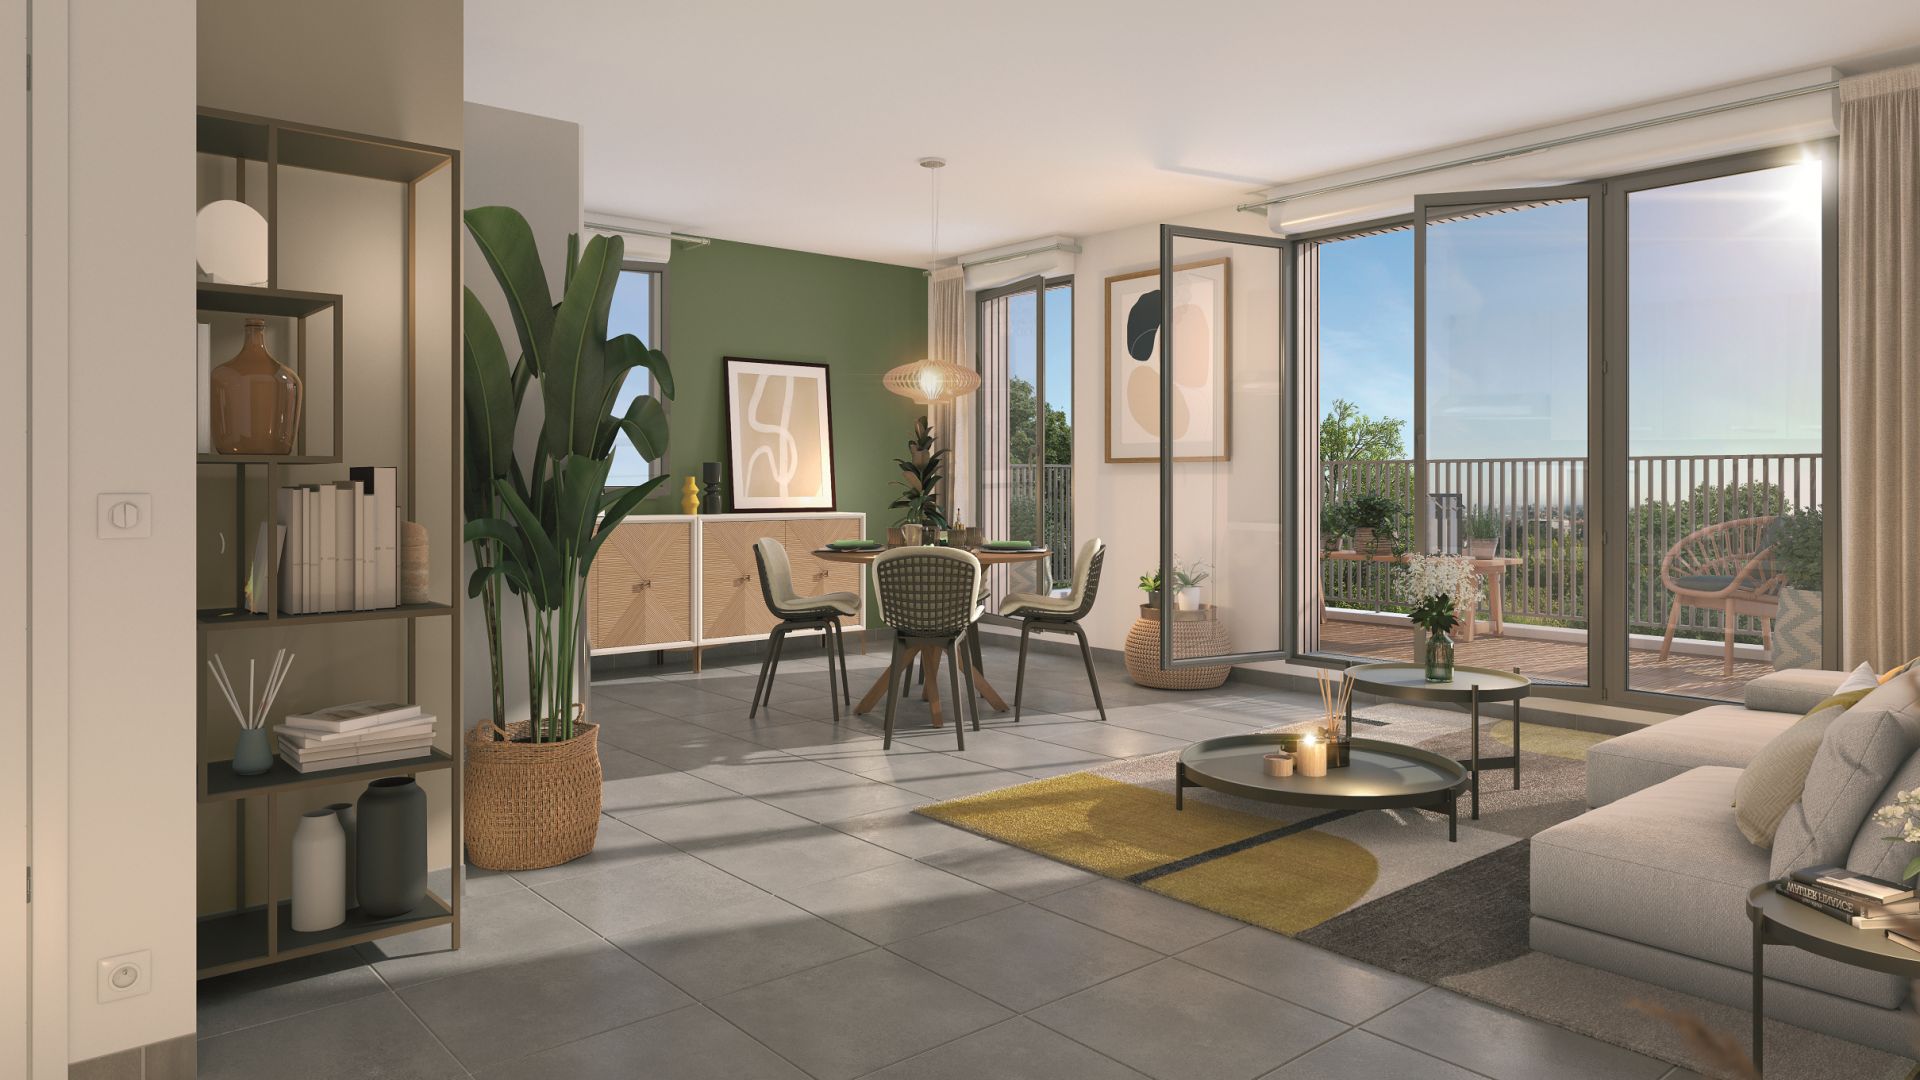 Greencity immobilier - achat appartements neufs du T1 au T4 - Résidence Le Tivoli- 95380 Louvres - intérieur T3